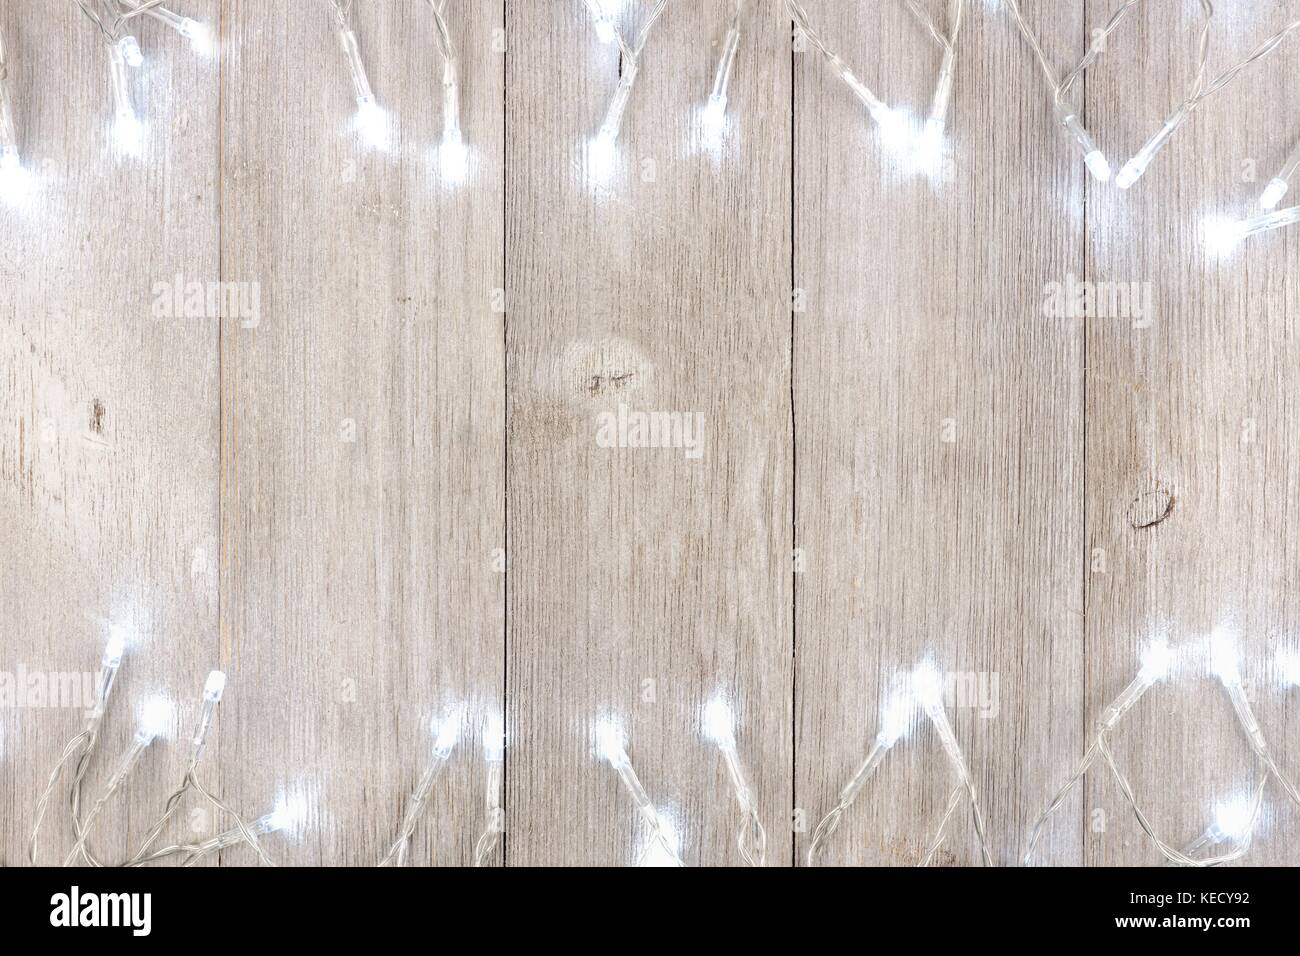 White Christmas lights doppelten Umrandung, oben Blick auf ein helles Grau Holz Hintergrund Stockfoto